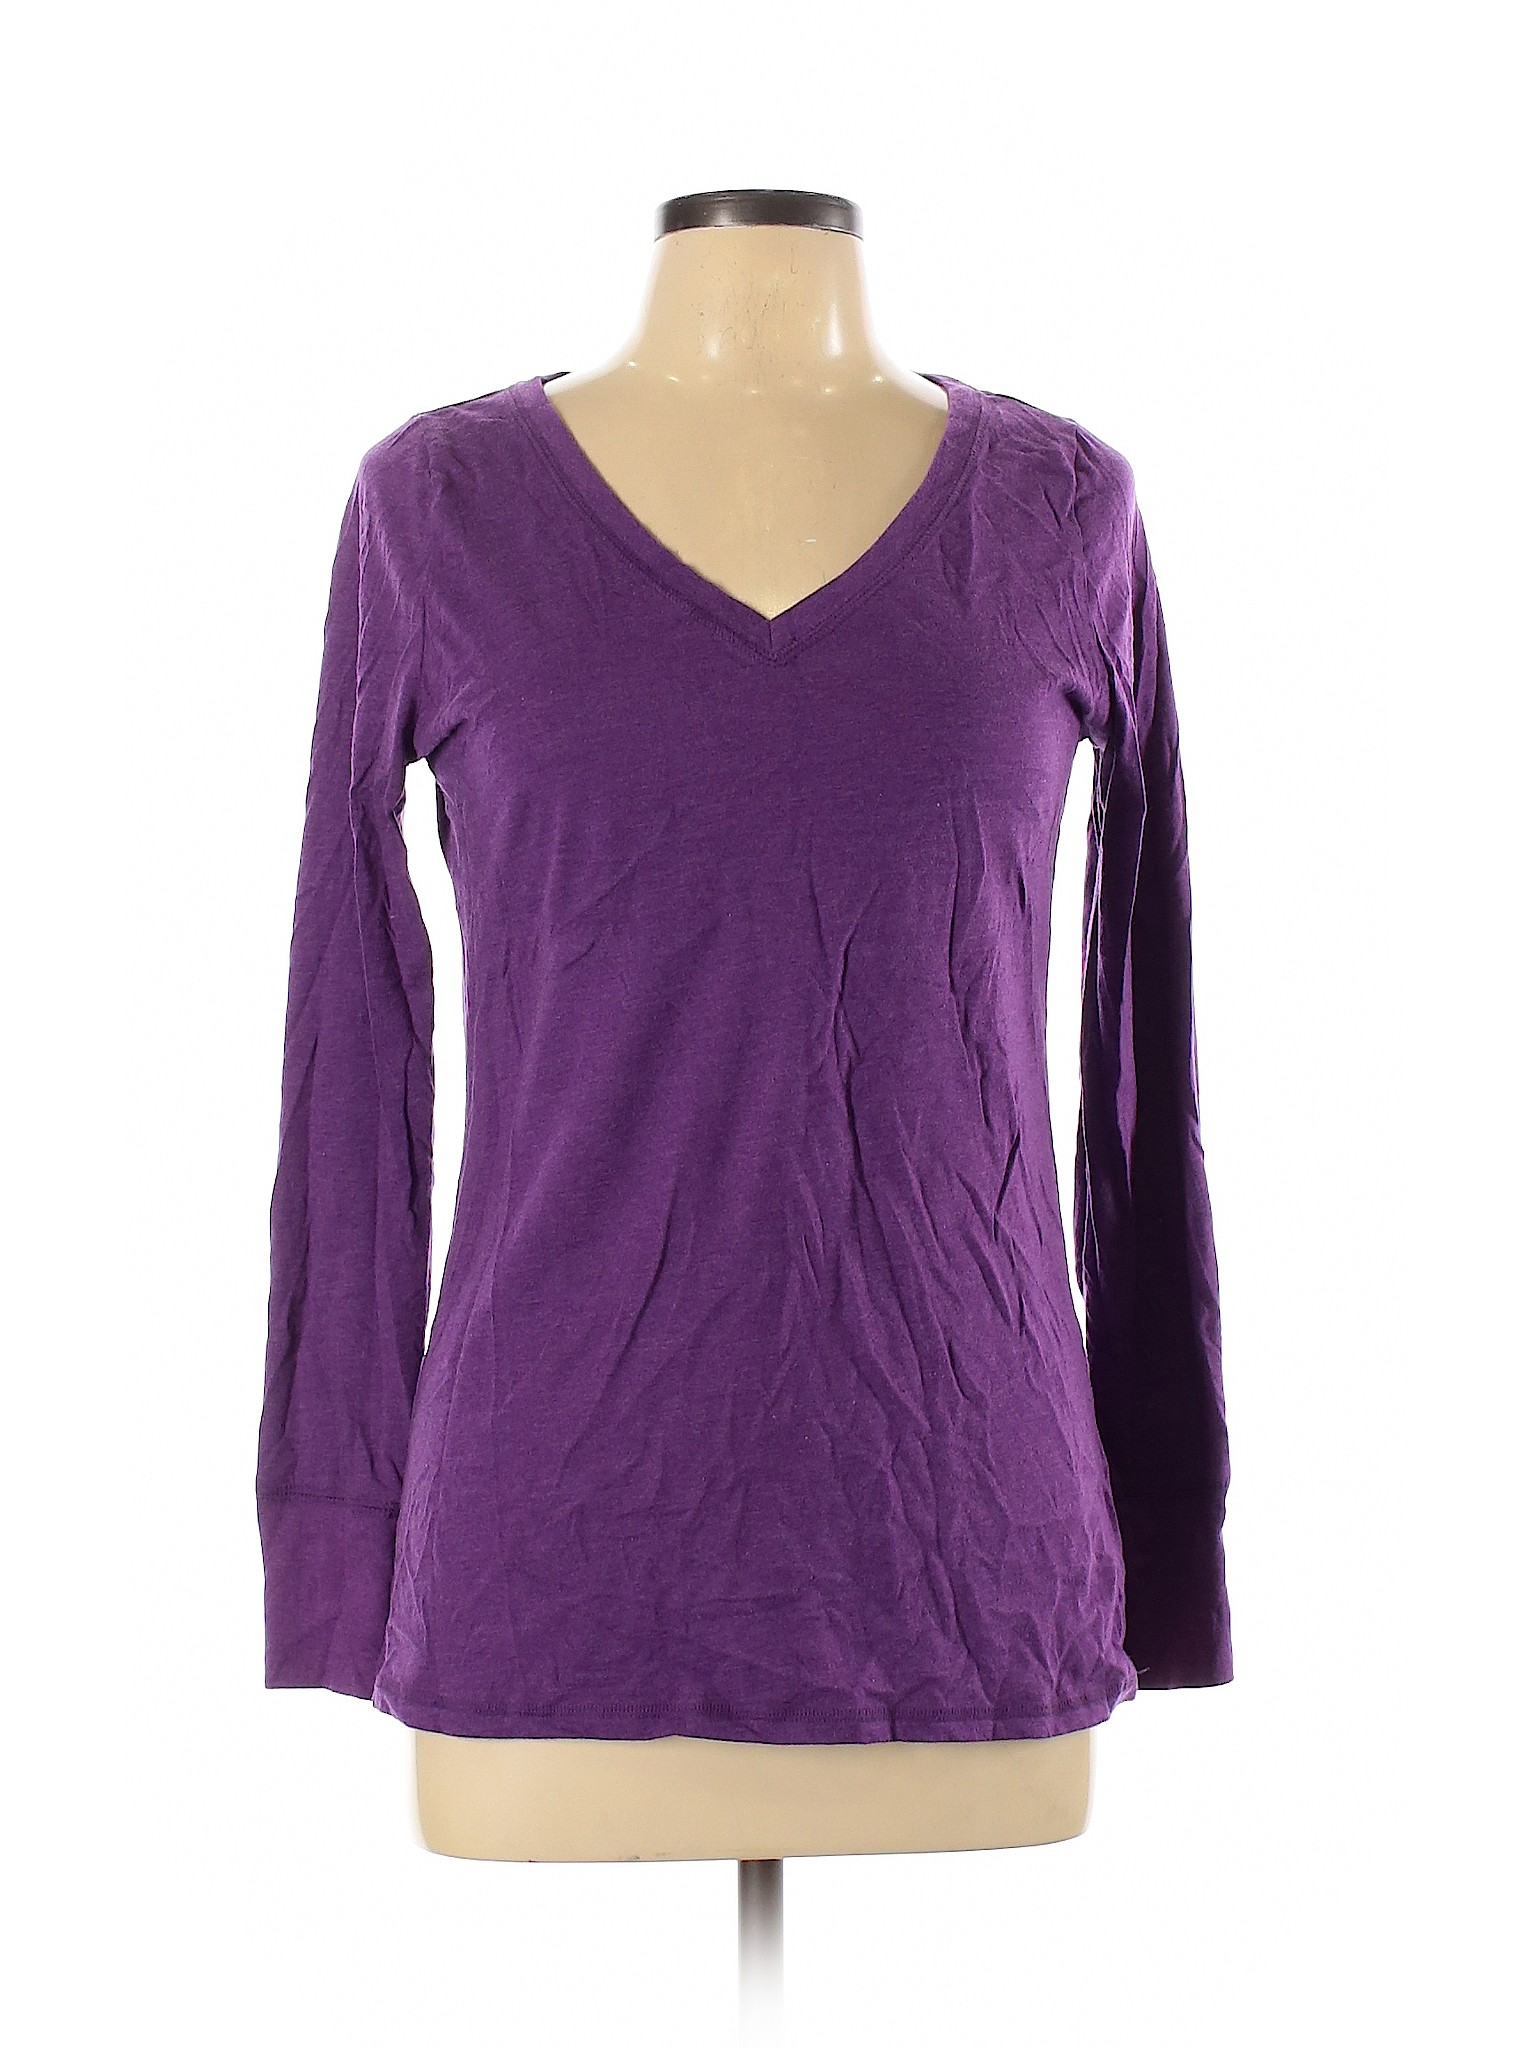 Mossimo Women Purple Sweatshirt L | eBay